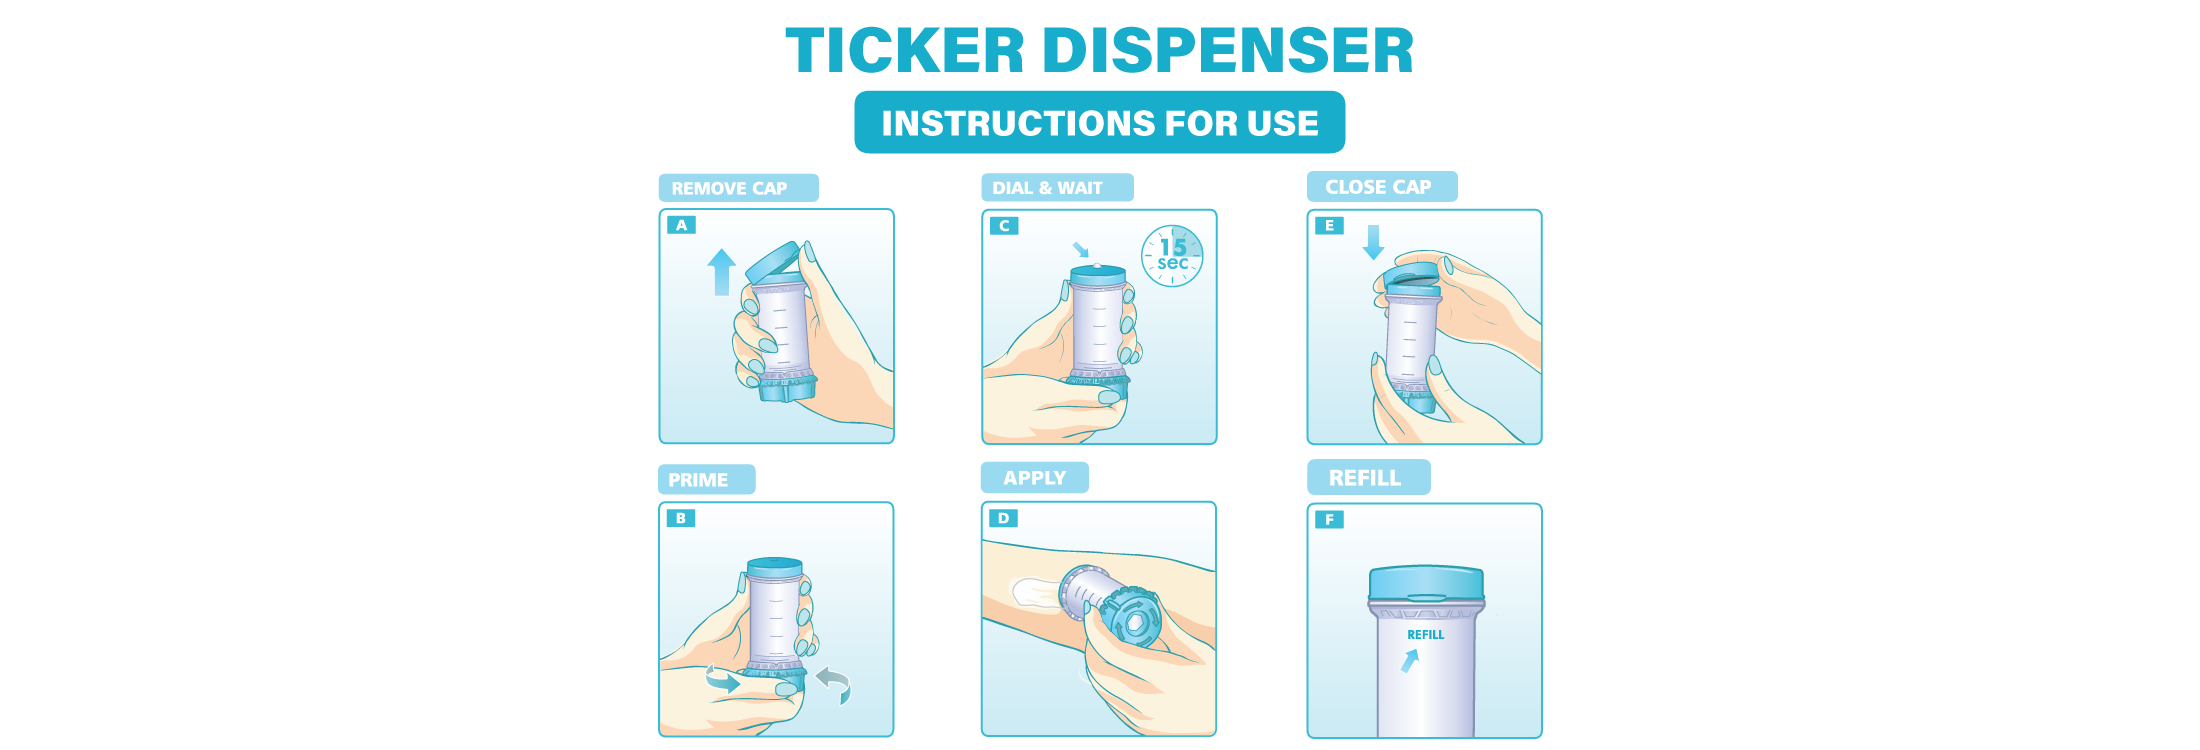 TICKER Instructions Slider Cartoon